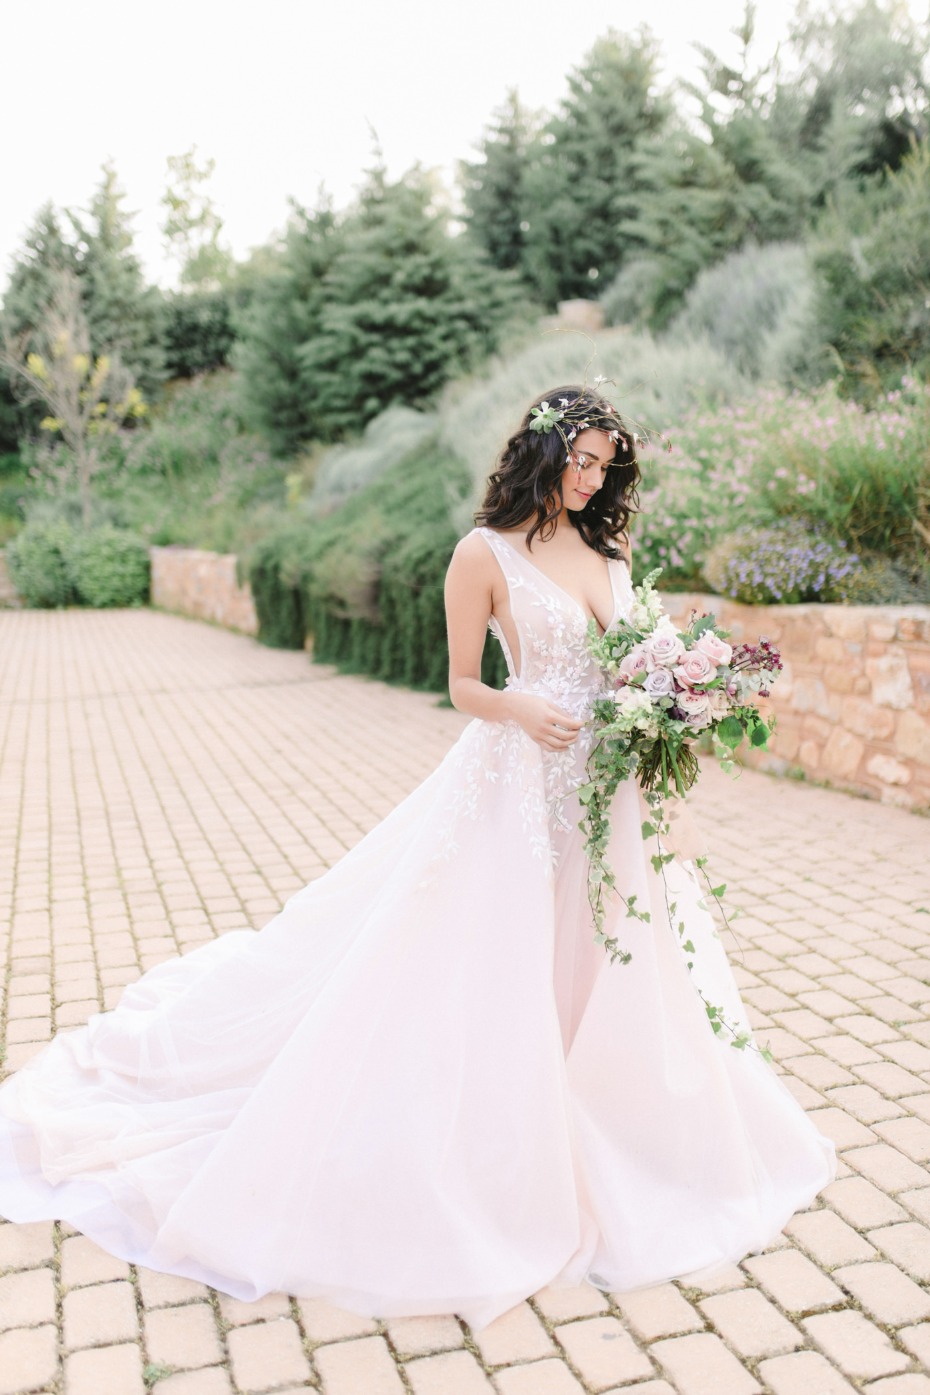 Blush wedding dress by Nathalie Karam